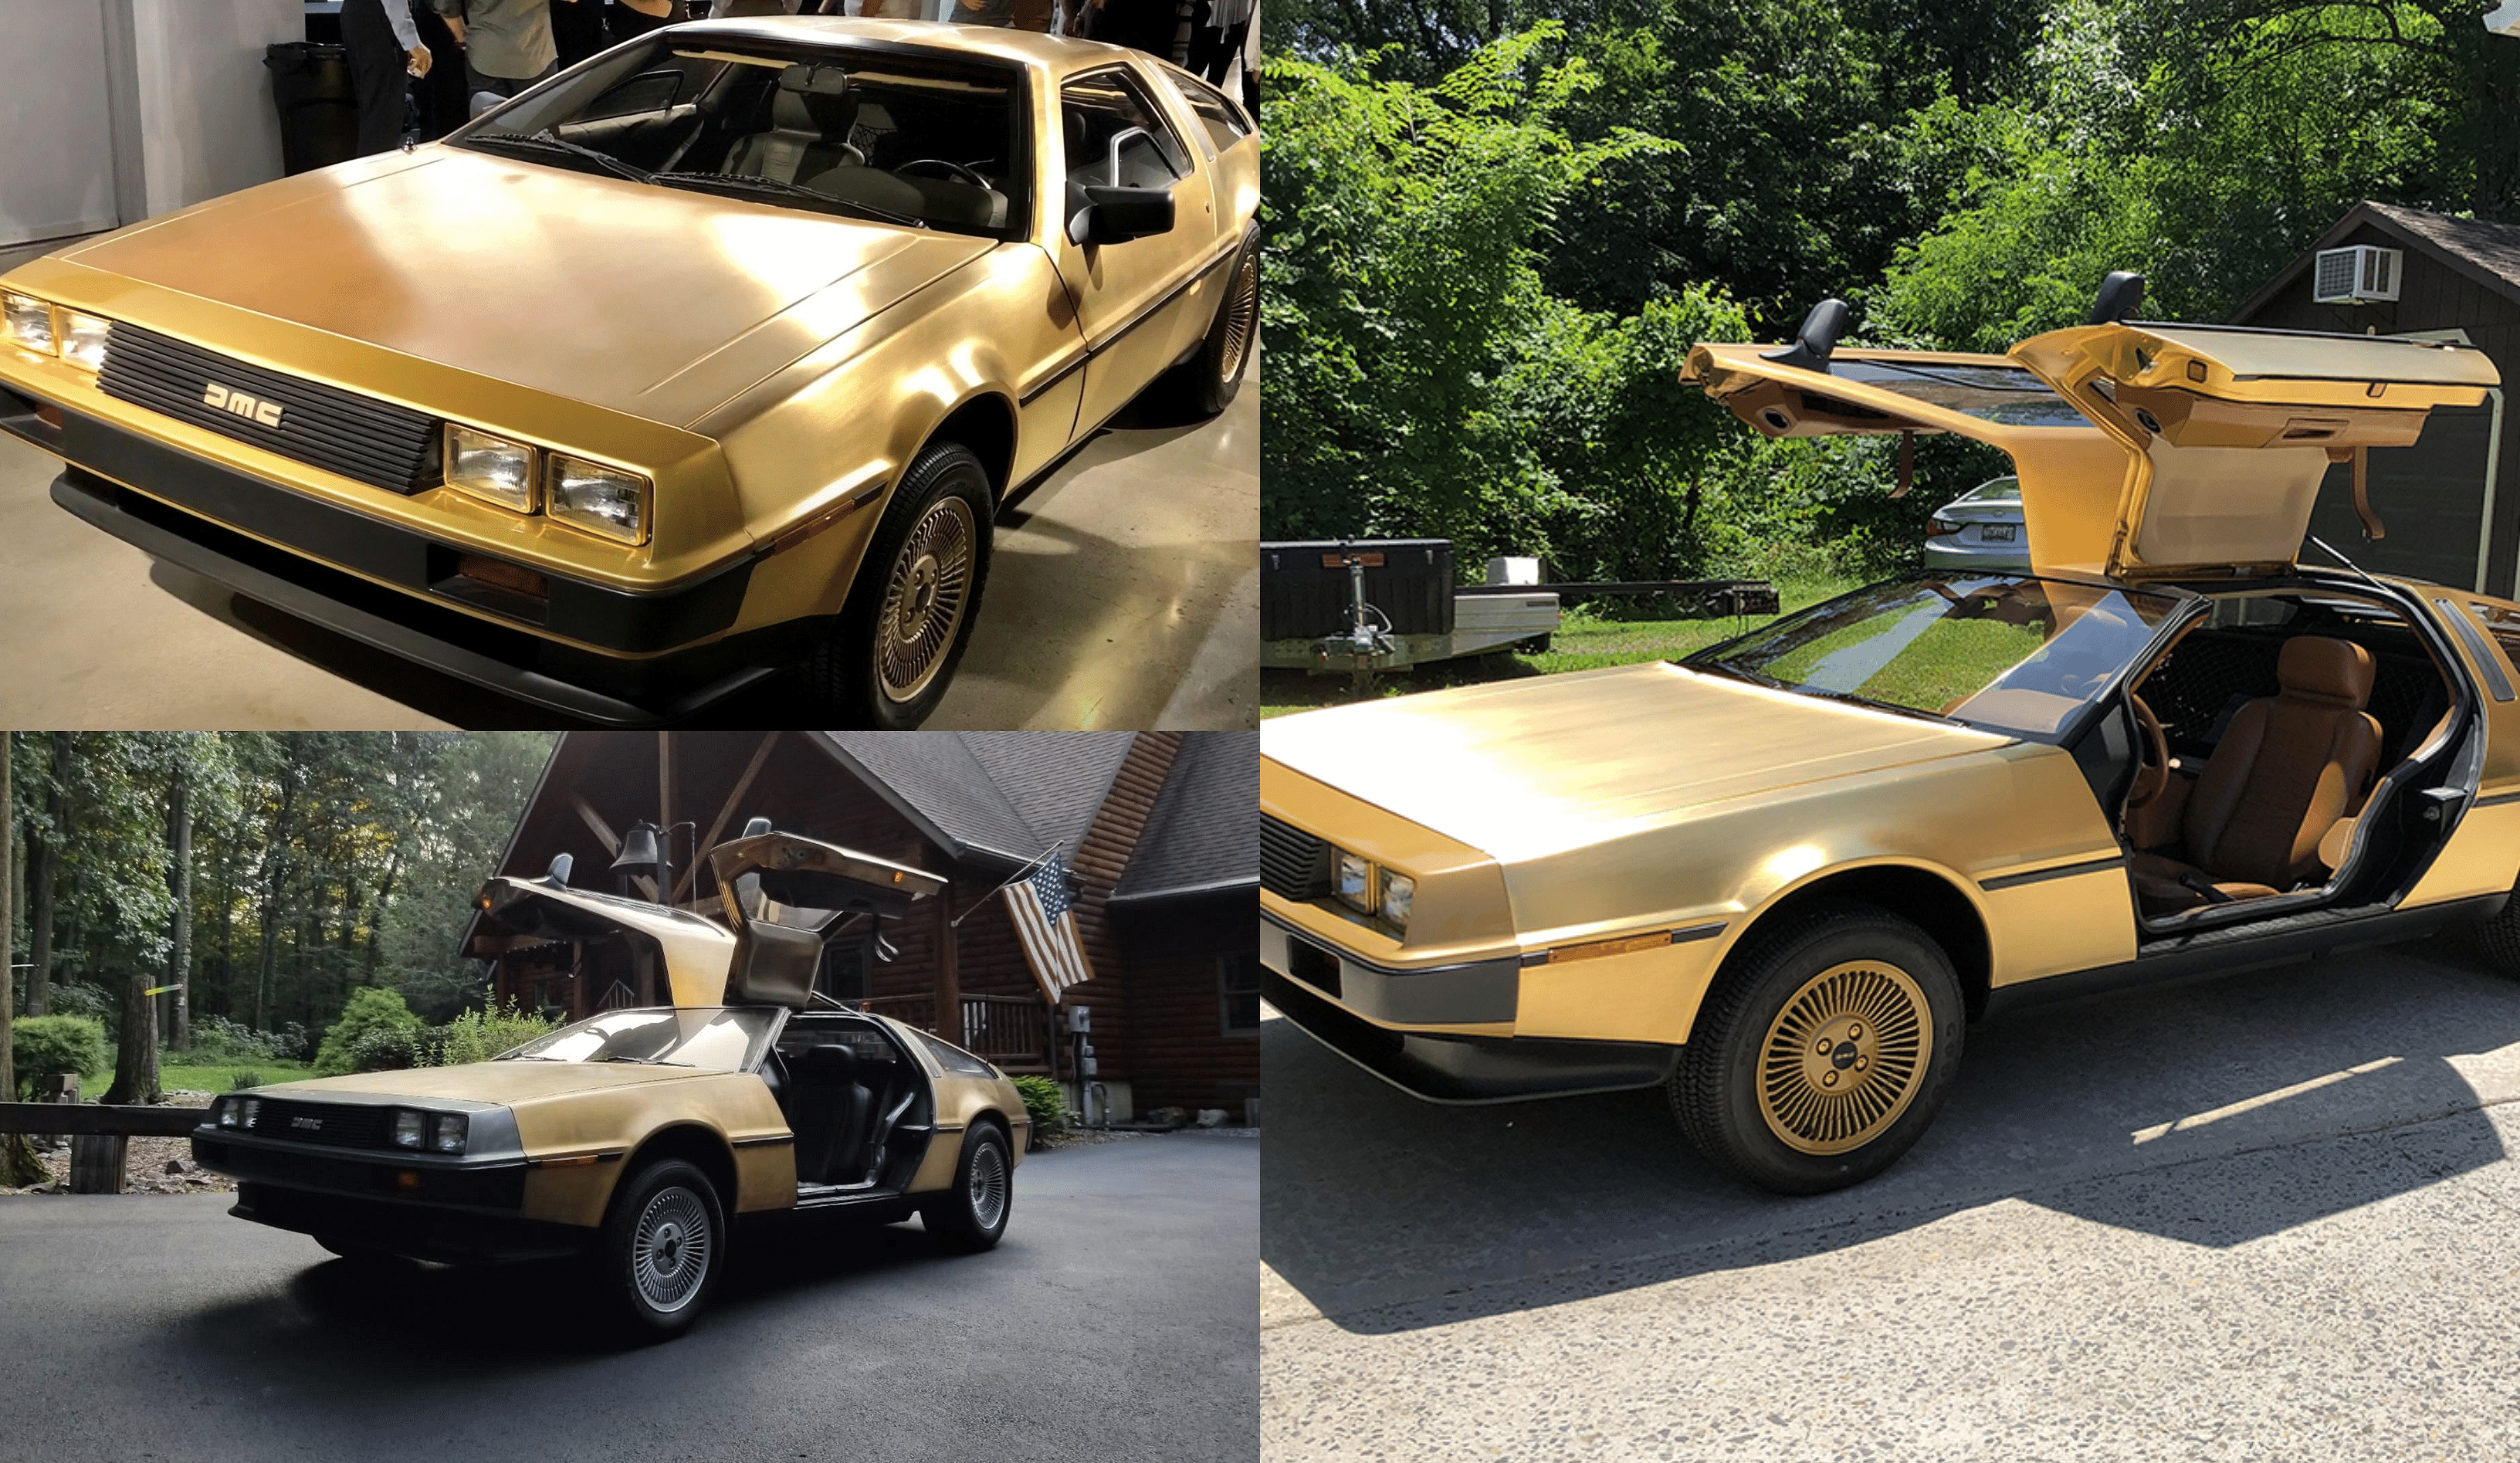 Gold-Plated DeLorean DMC-12s